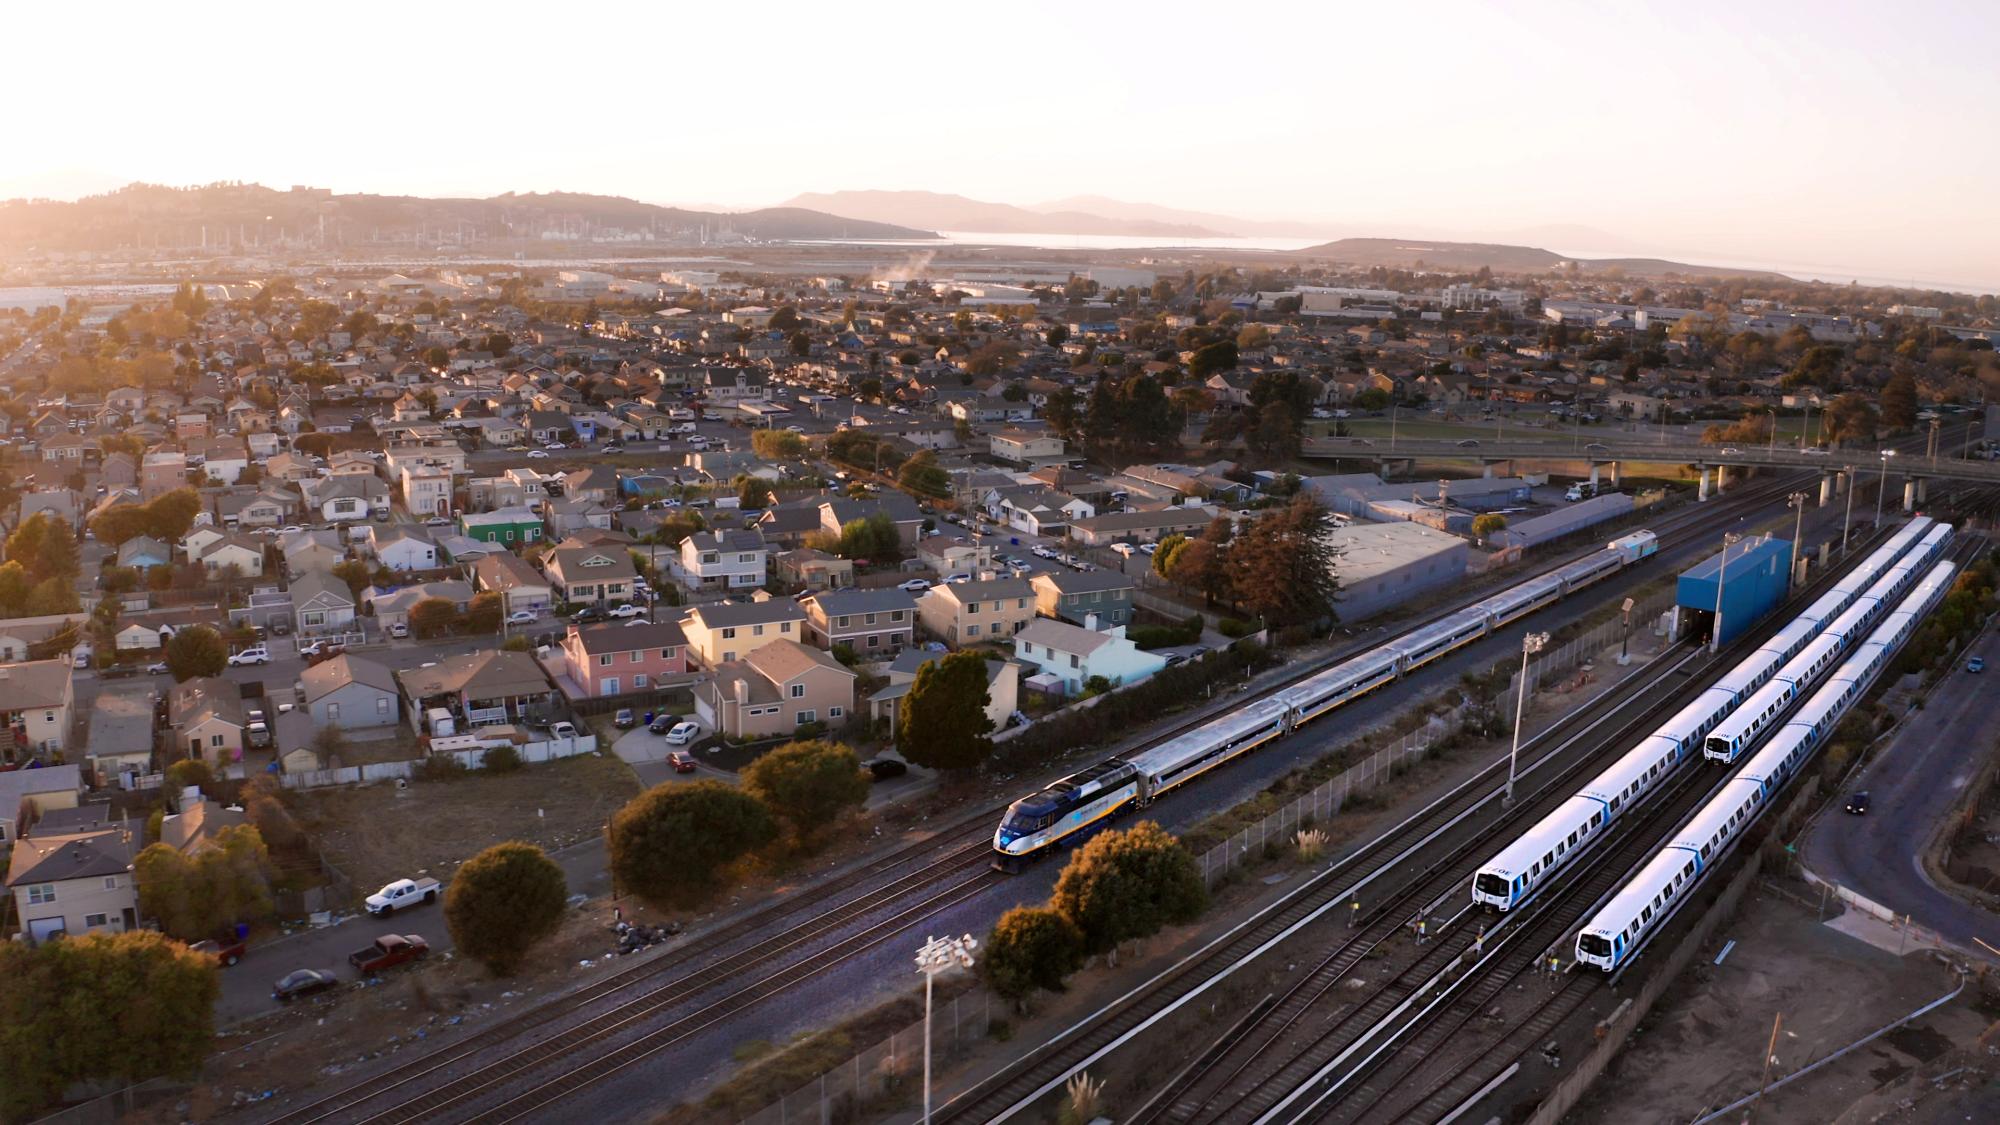 加利福尼亞州 Richmond 的鳥瞰圖捕捉到了一個龐大的住宅區，毗鄰國會大廈走廊和 BART 服務的優先權，軌道上正有多輛列車在運行。